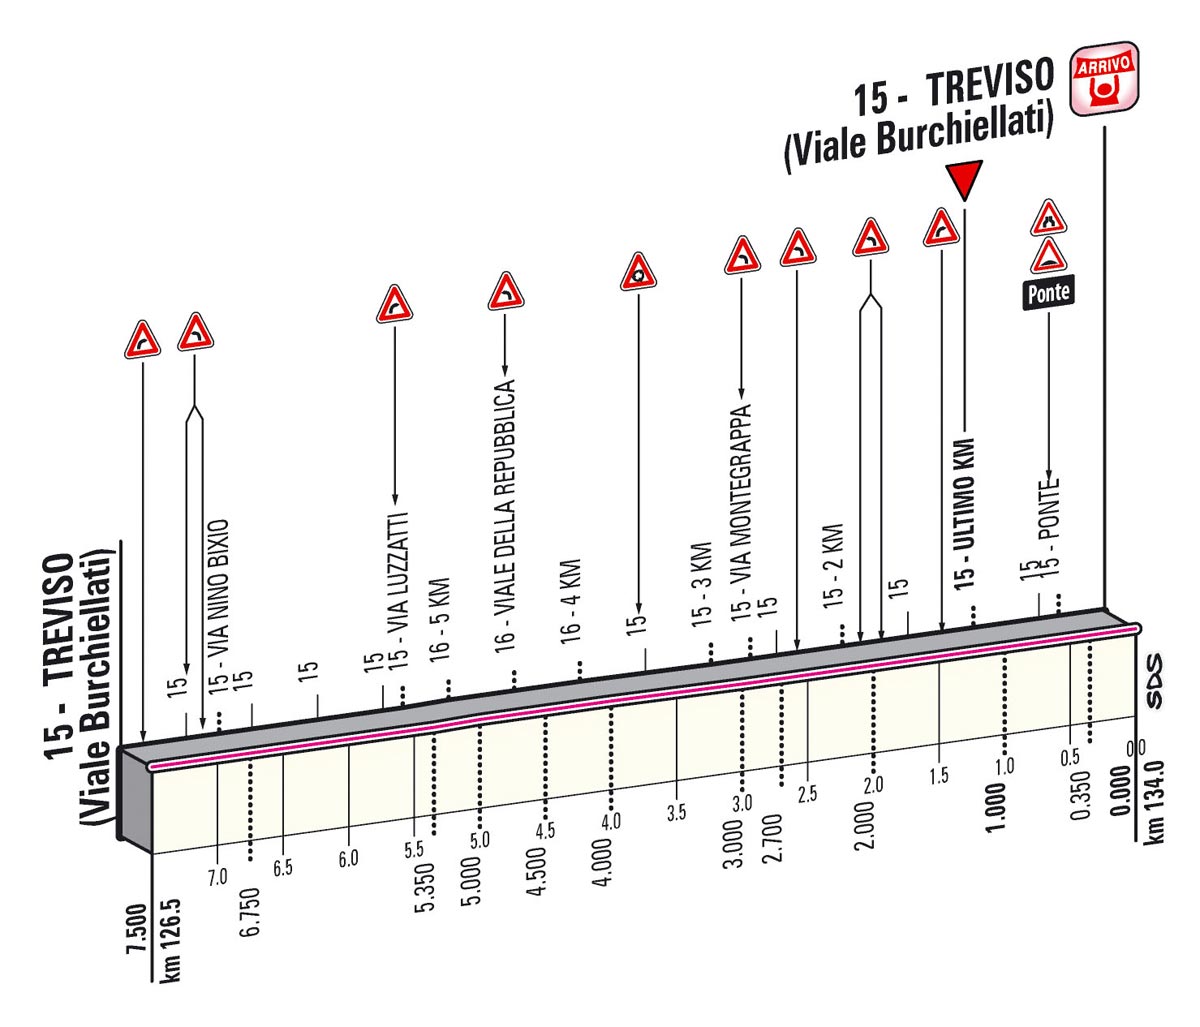 Giro d'Italia 2013 stage 12 last kms